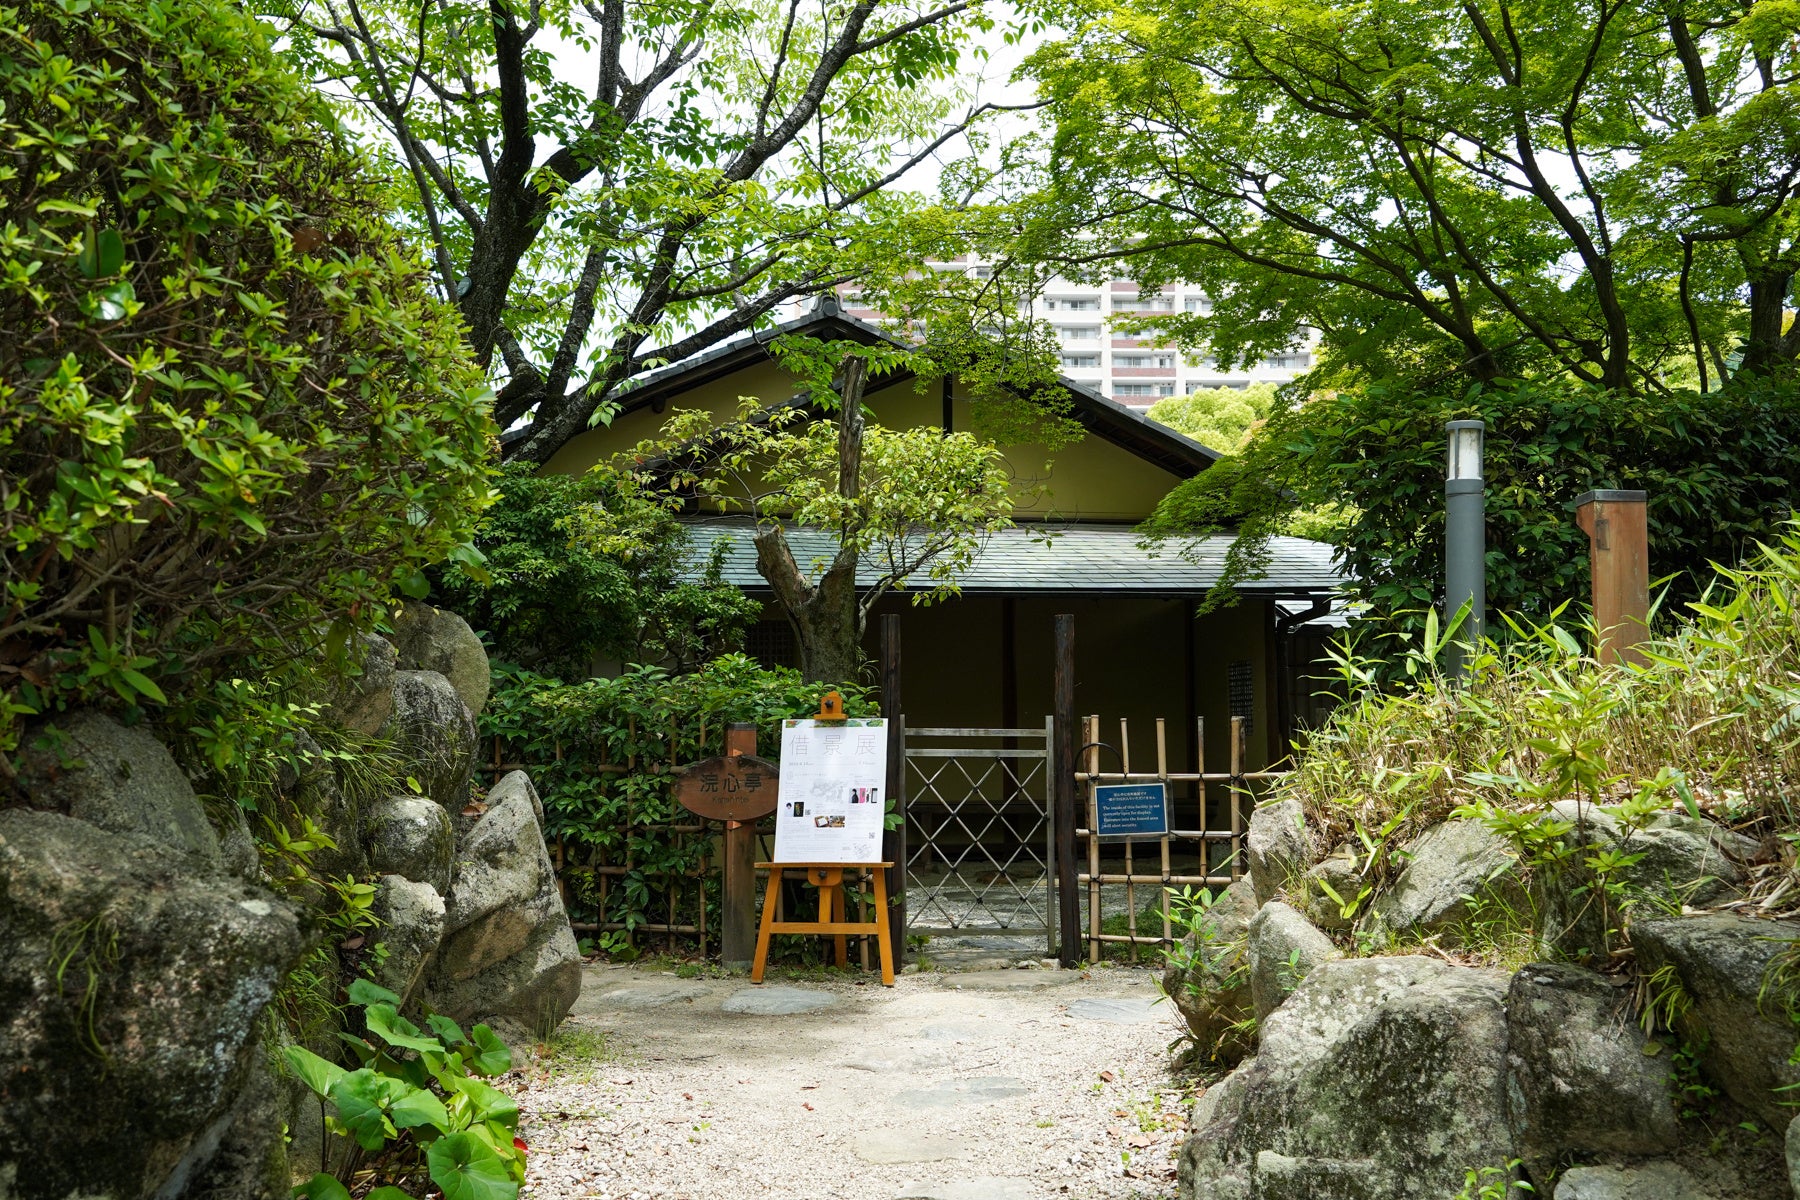 《カフェ空間×アート》の企画展 「借景」Borrowed scenery　神戸随一の日本庭園・相楽園を借景にTHE SORAKUEN「相楽園パーラー」で開催